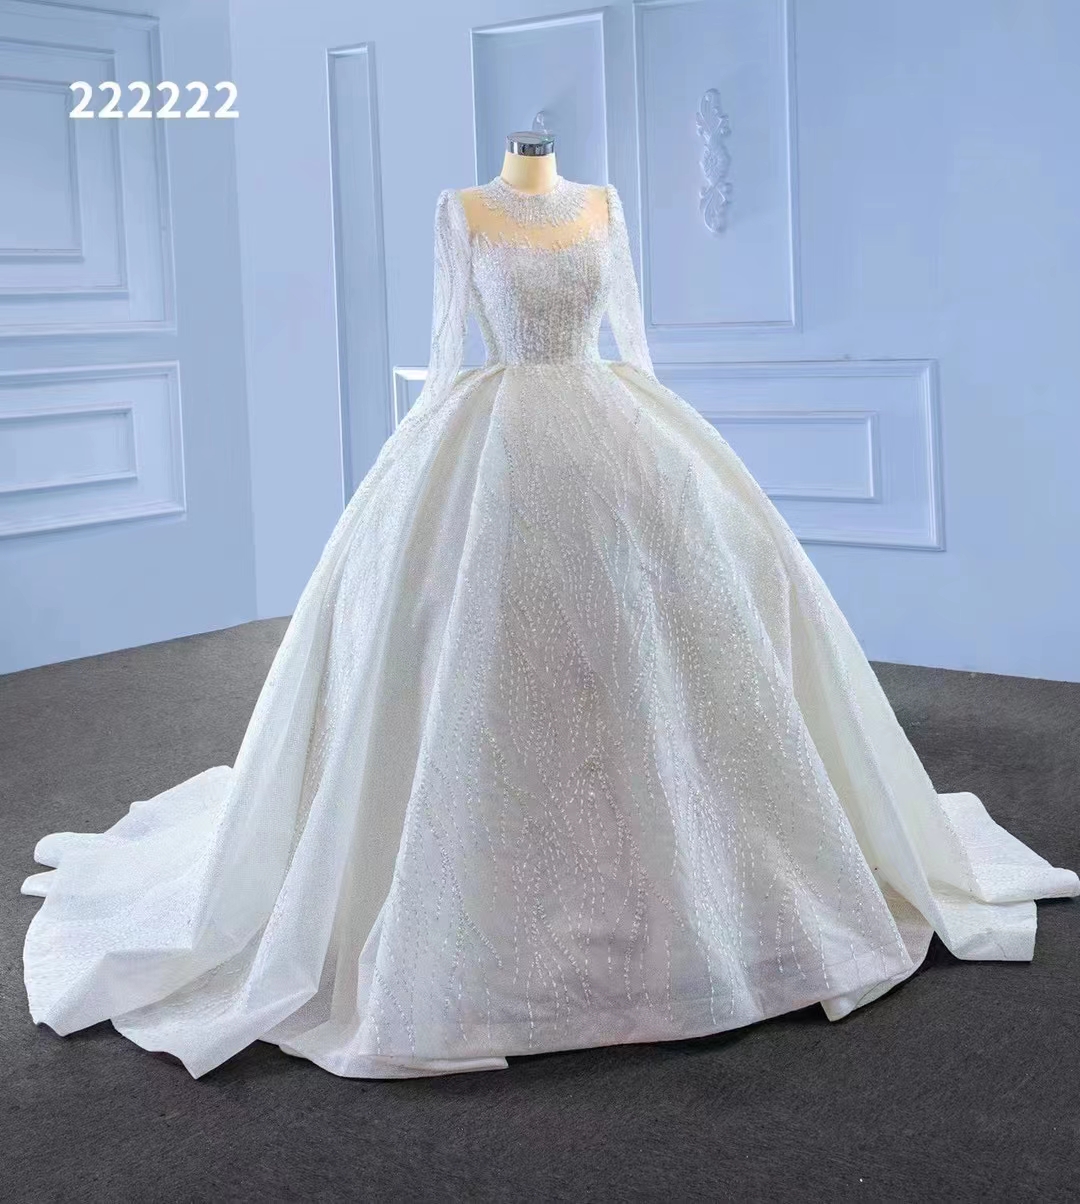 Witte hoge kraag trouwjurk lange mouw parel luxe tule bruid backless handwerk sm222222